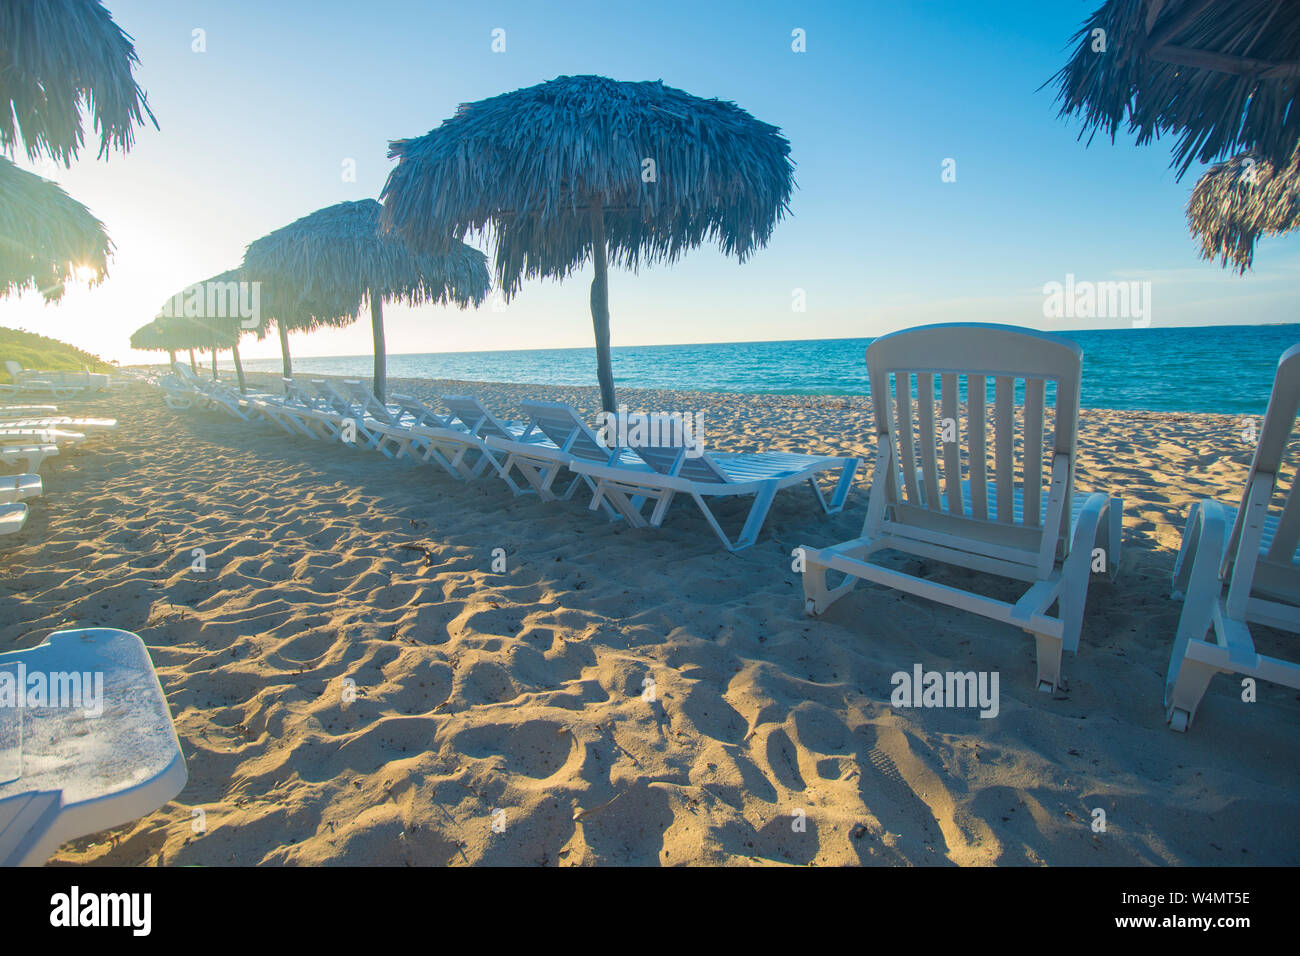 Varadero Beach ist ein tolles Reiseziel in der Karibik. Hotels und Resorts mit Hunderte von Meilen von schönen Stränden. Reisen Standorte Stockfoto